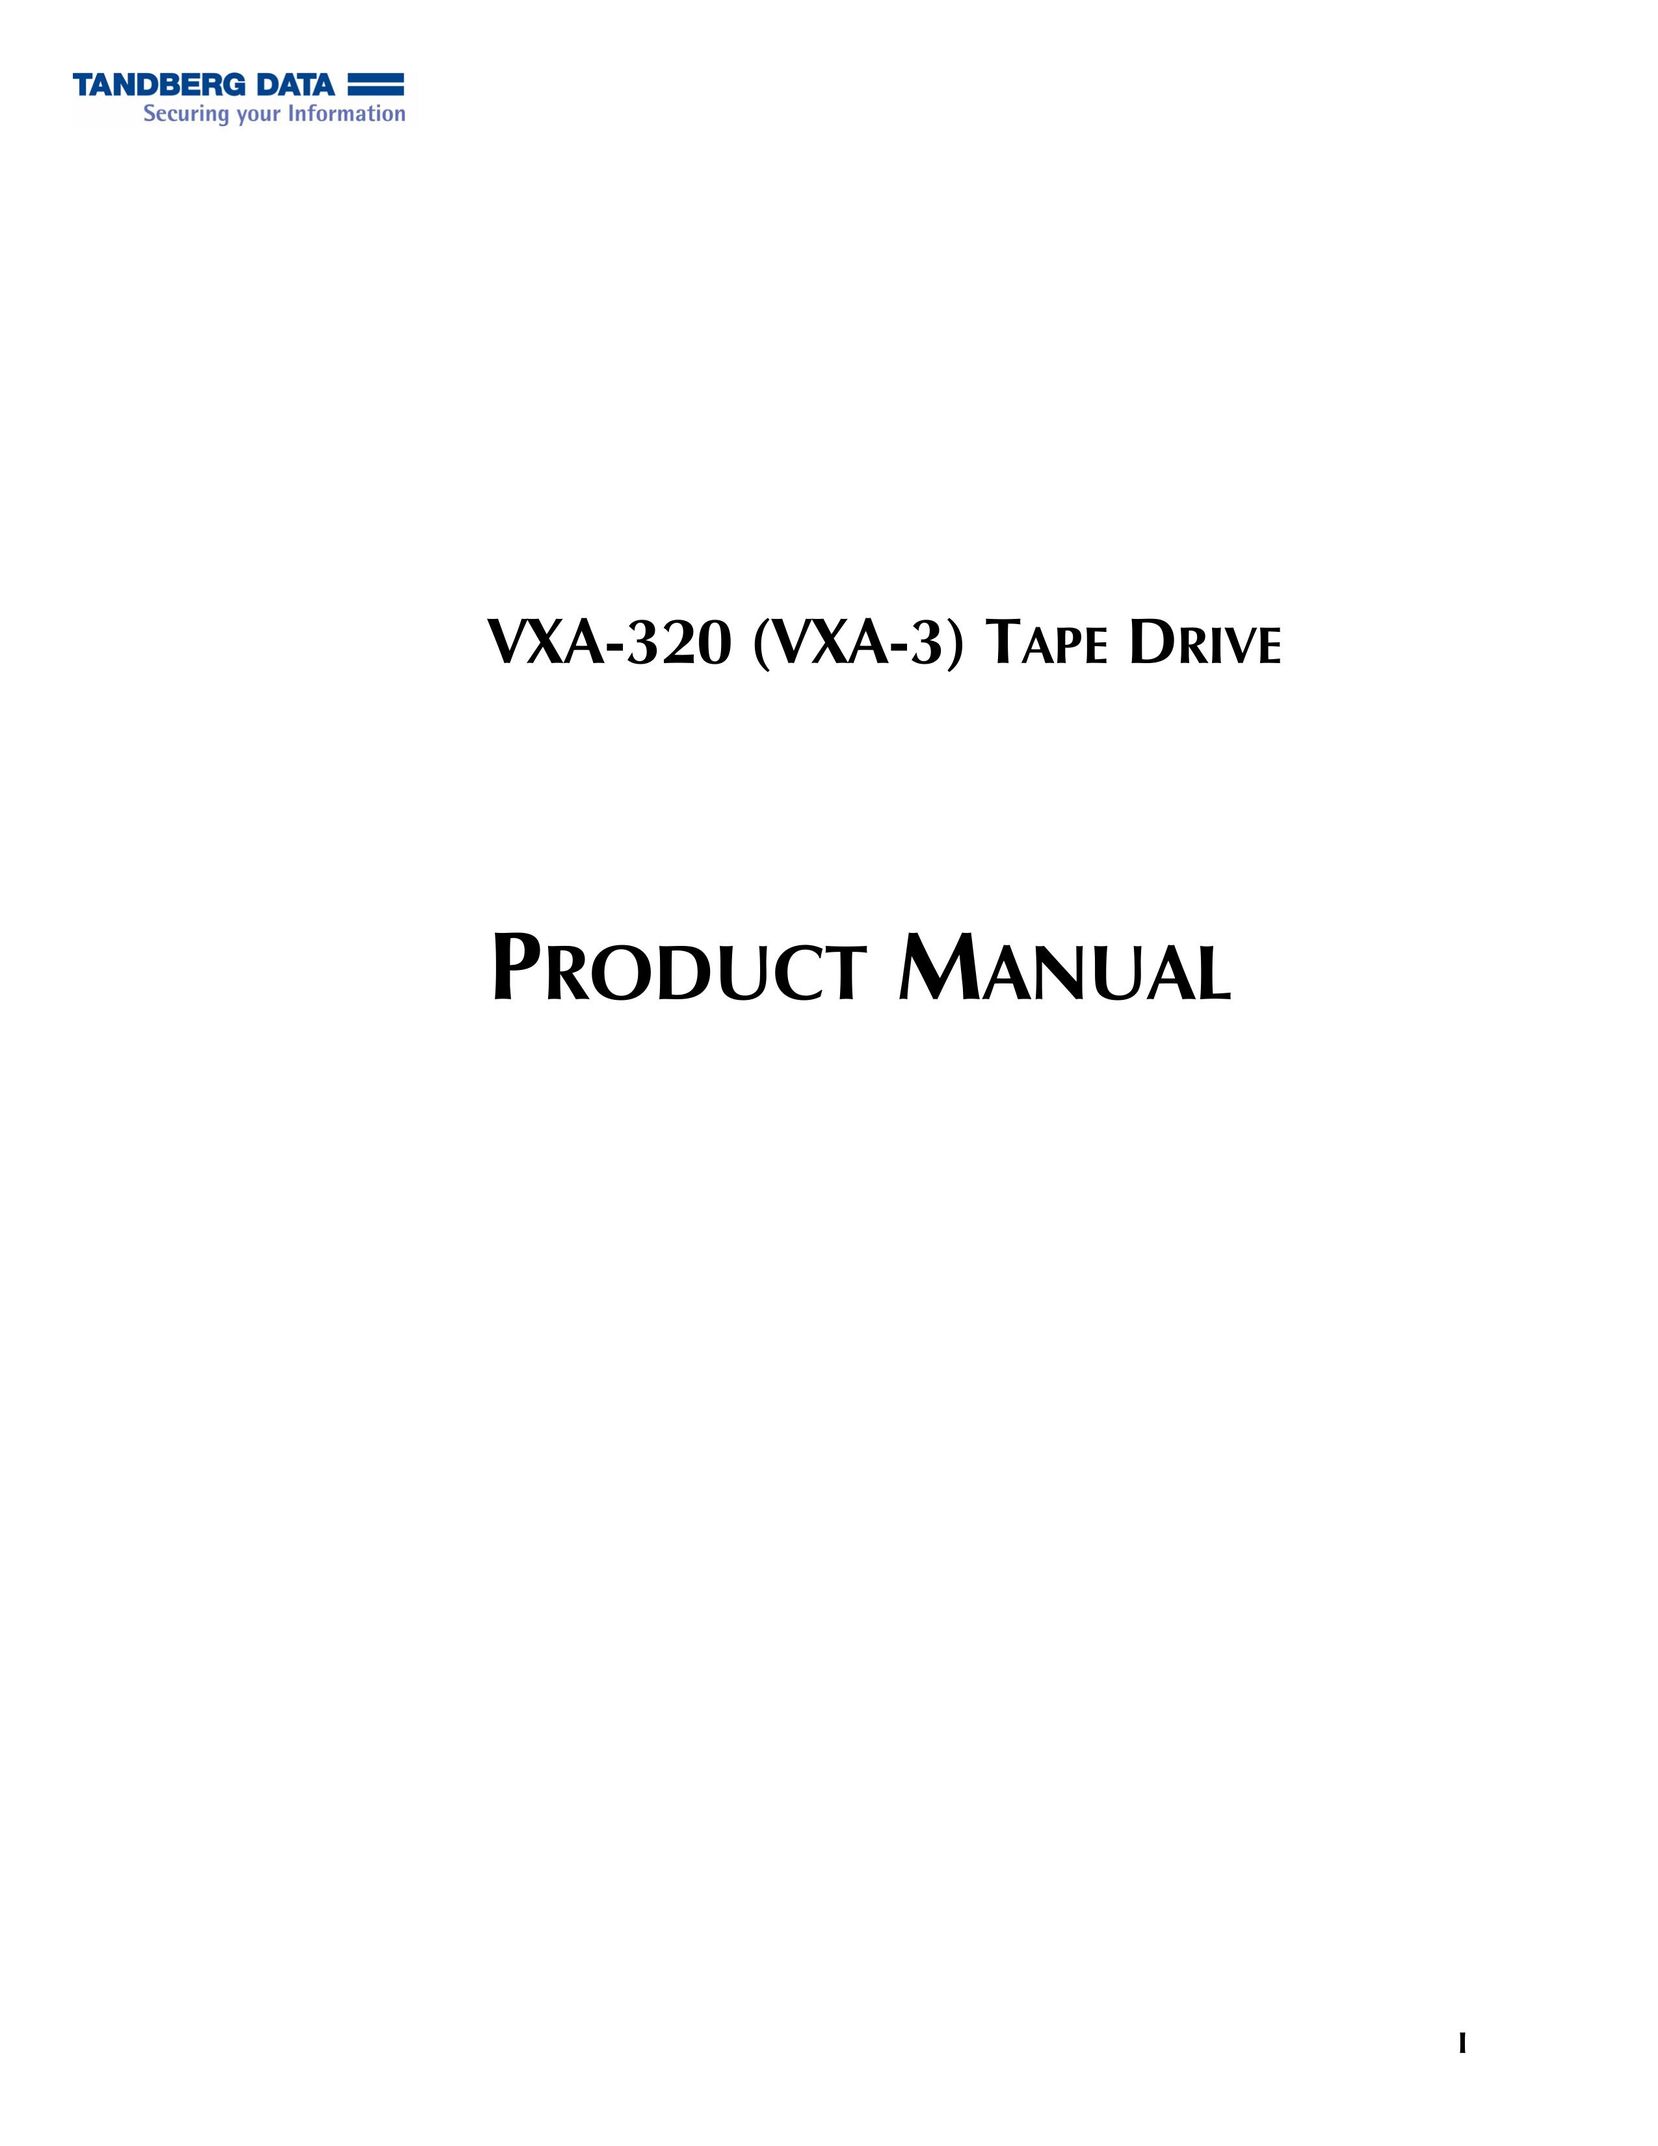 Tandberg Data VXA-320 (VXA-3) Cassette Player User Manual